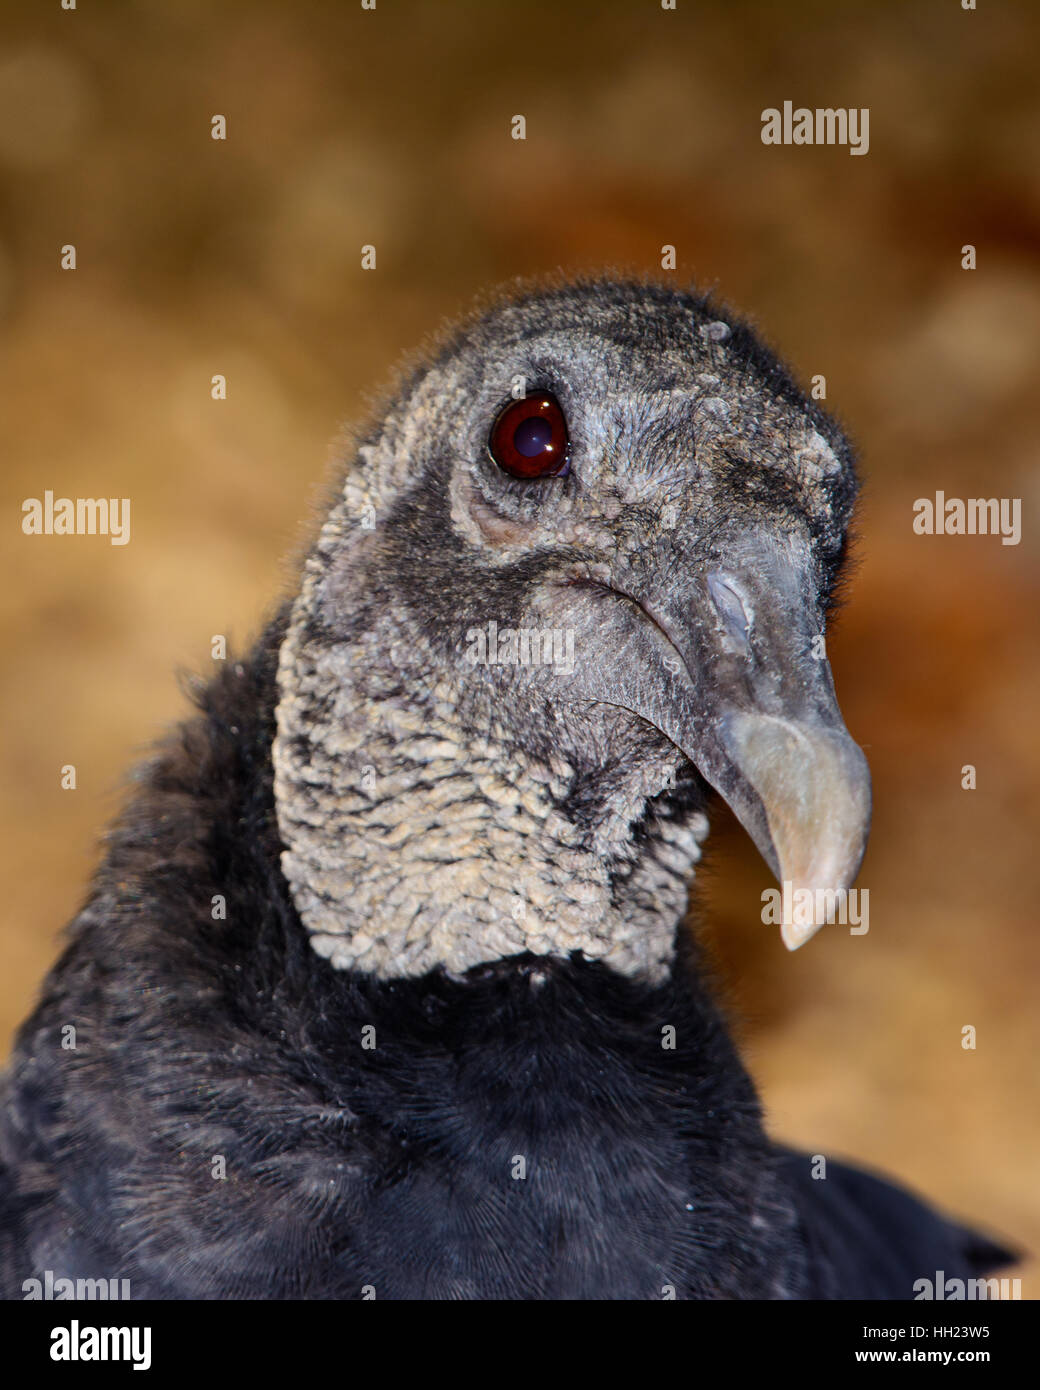 American buitre negro (Coragyps atratus) bokeh de fondo. Closeup muestra los detalles de la cabeza, el cuello y los ojos. Foto de stock